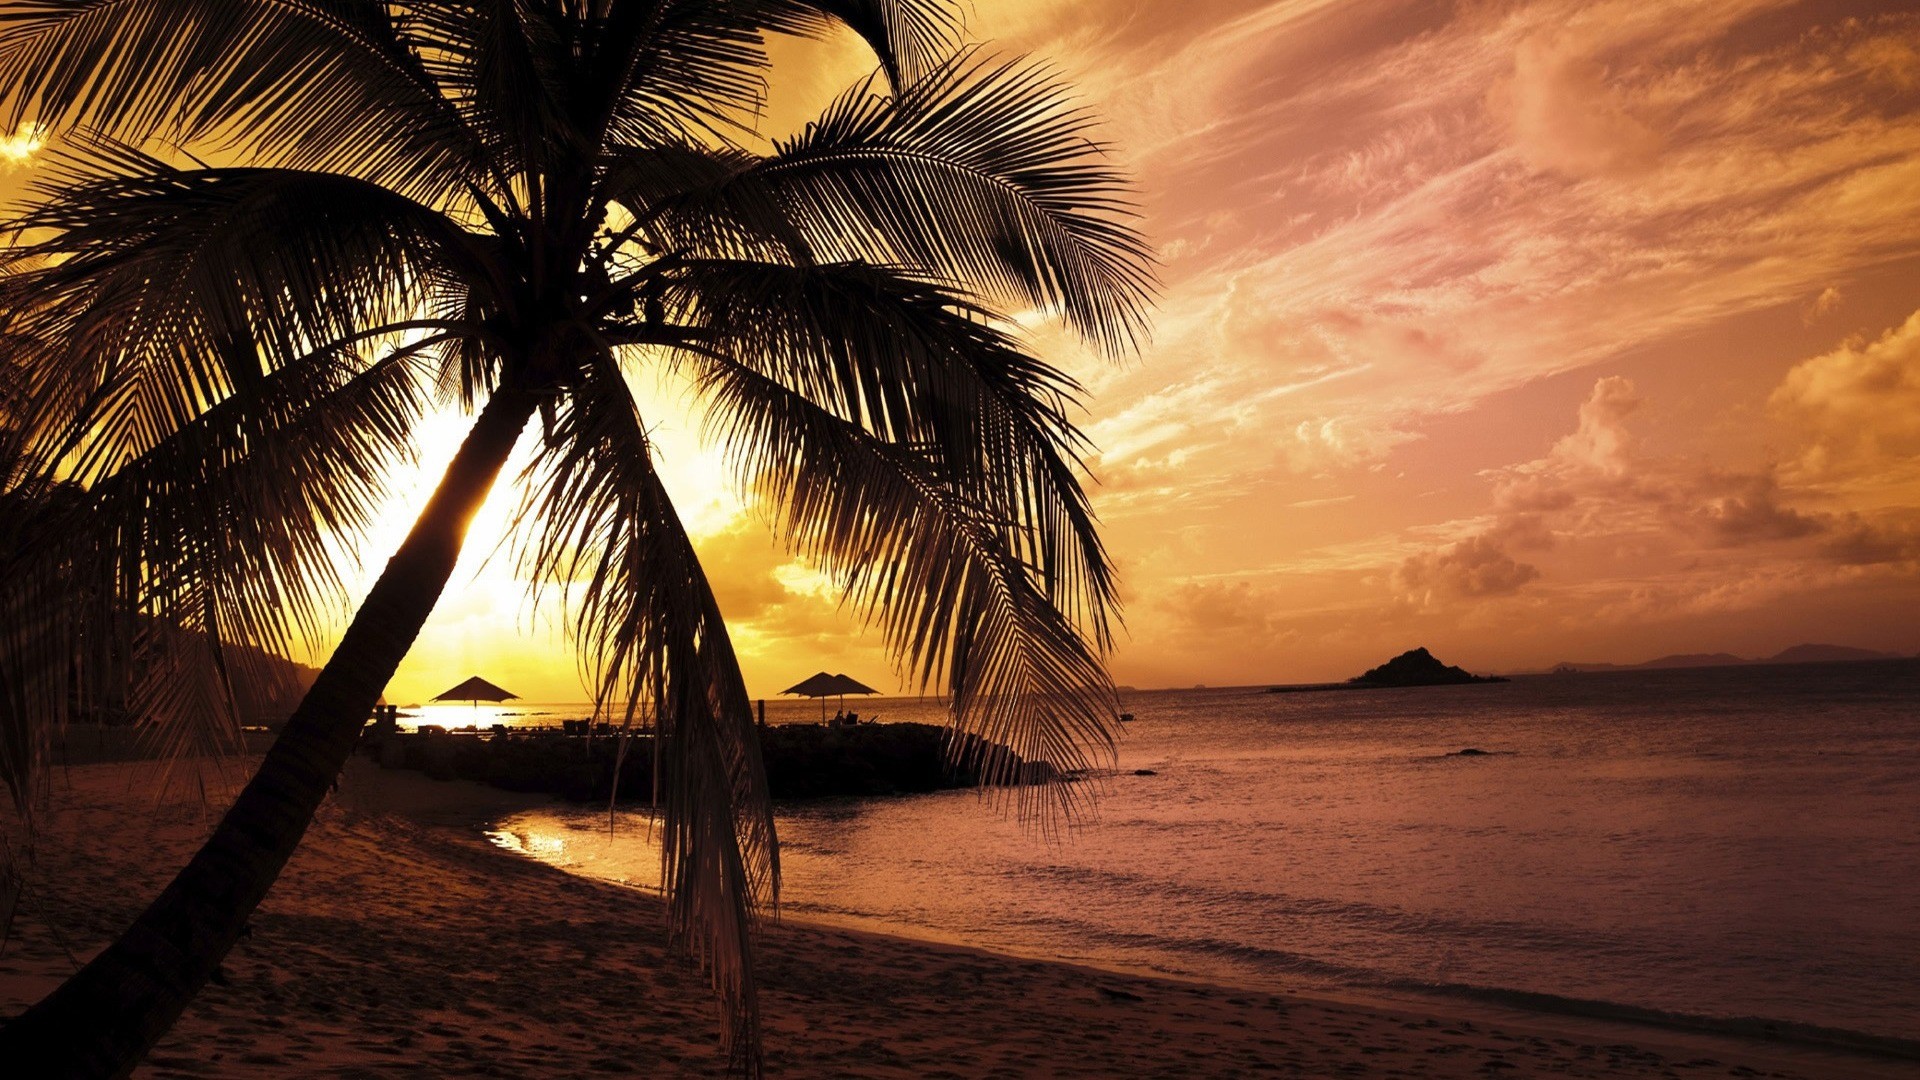 landscapes, nature, palm trees, beaches - desktop wallpaper